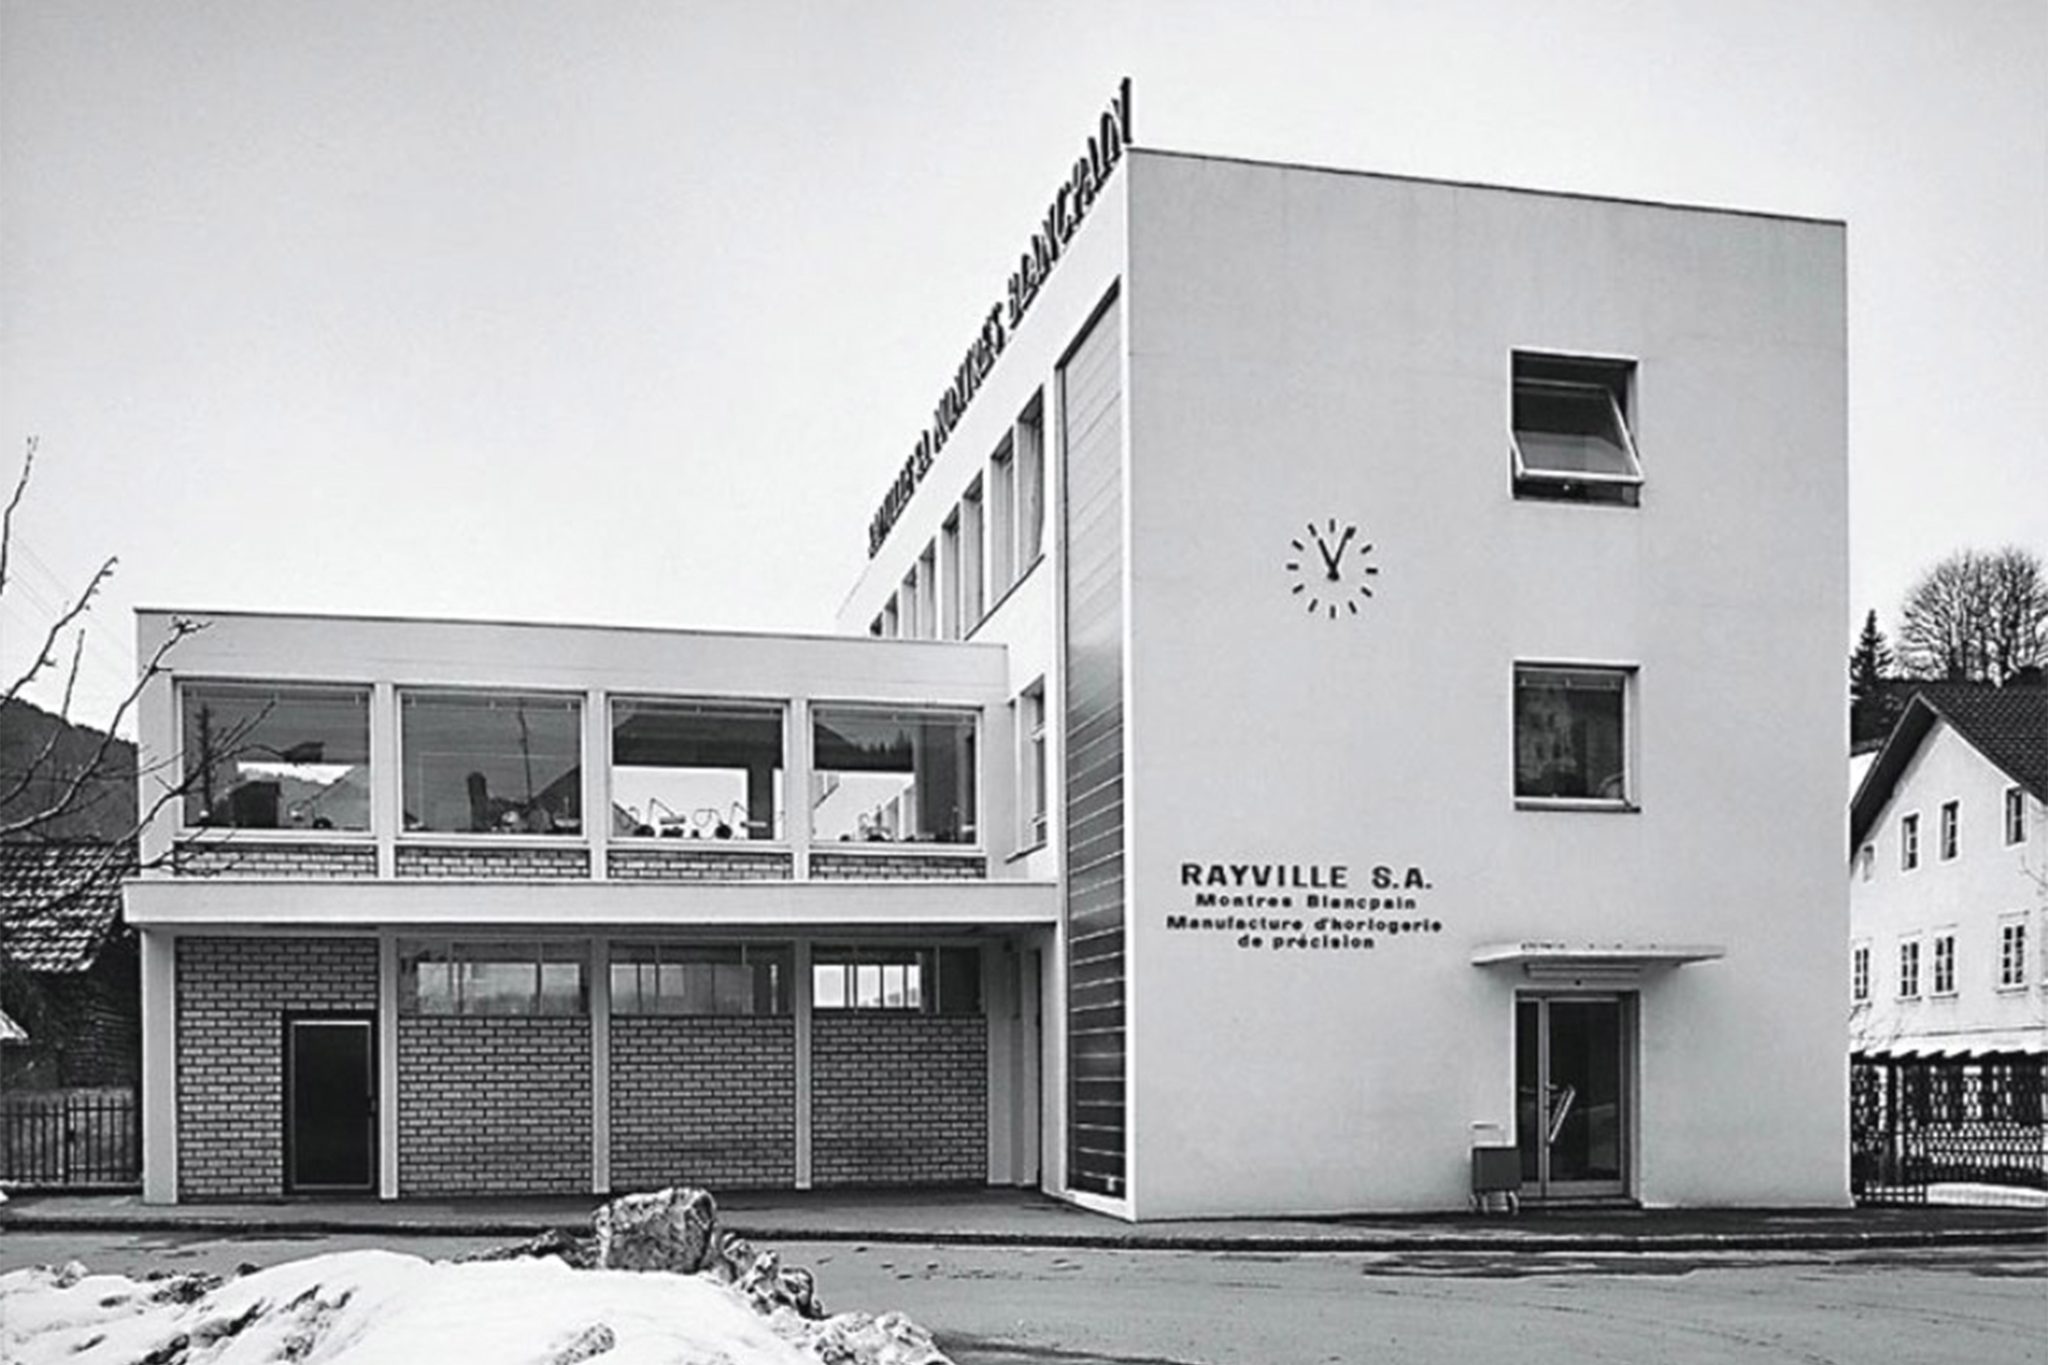 Die-Rayville-Blancpain-Manufaktur-in-Villeret-um-1963